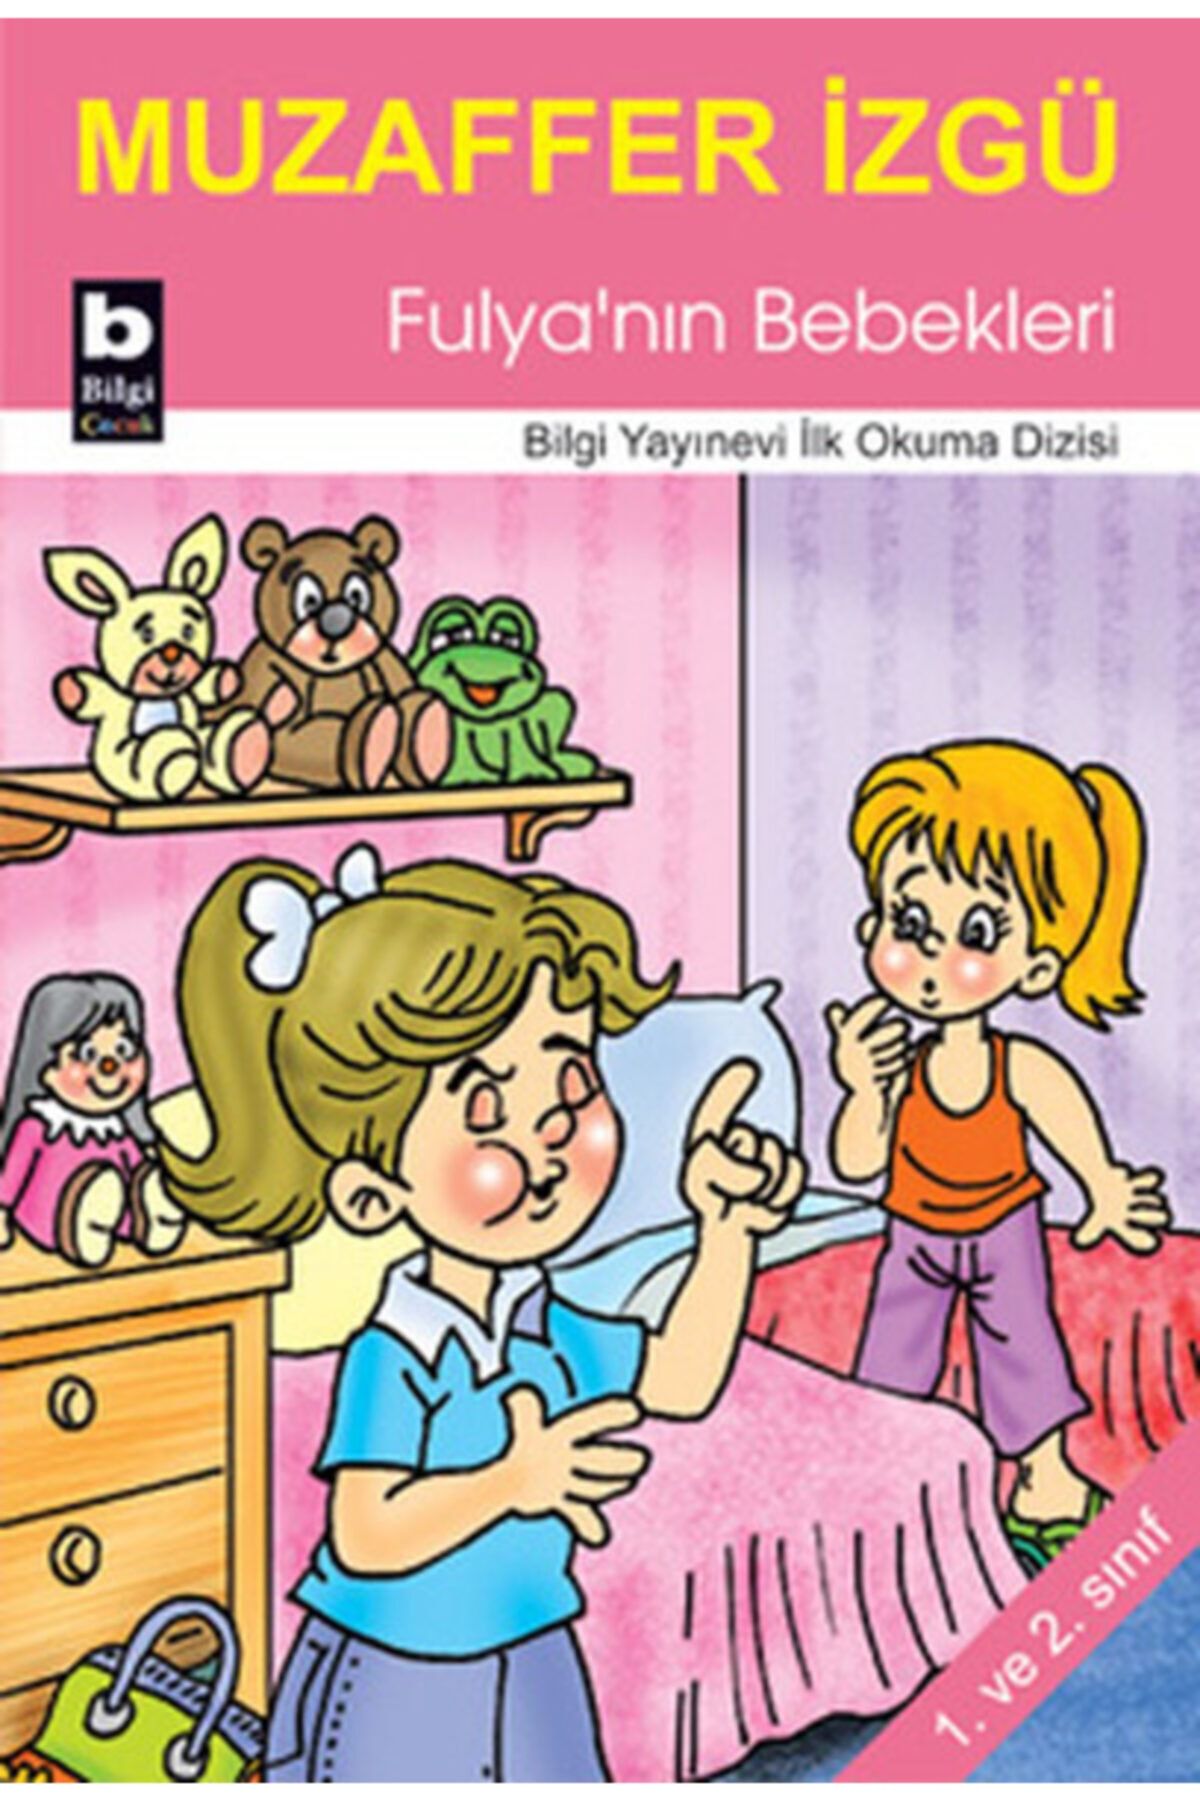 Bilgi Yayınları Fulya'nın Bebekleri İlk Okuma Dizisi Muzaffer İzgü